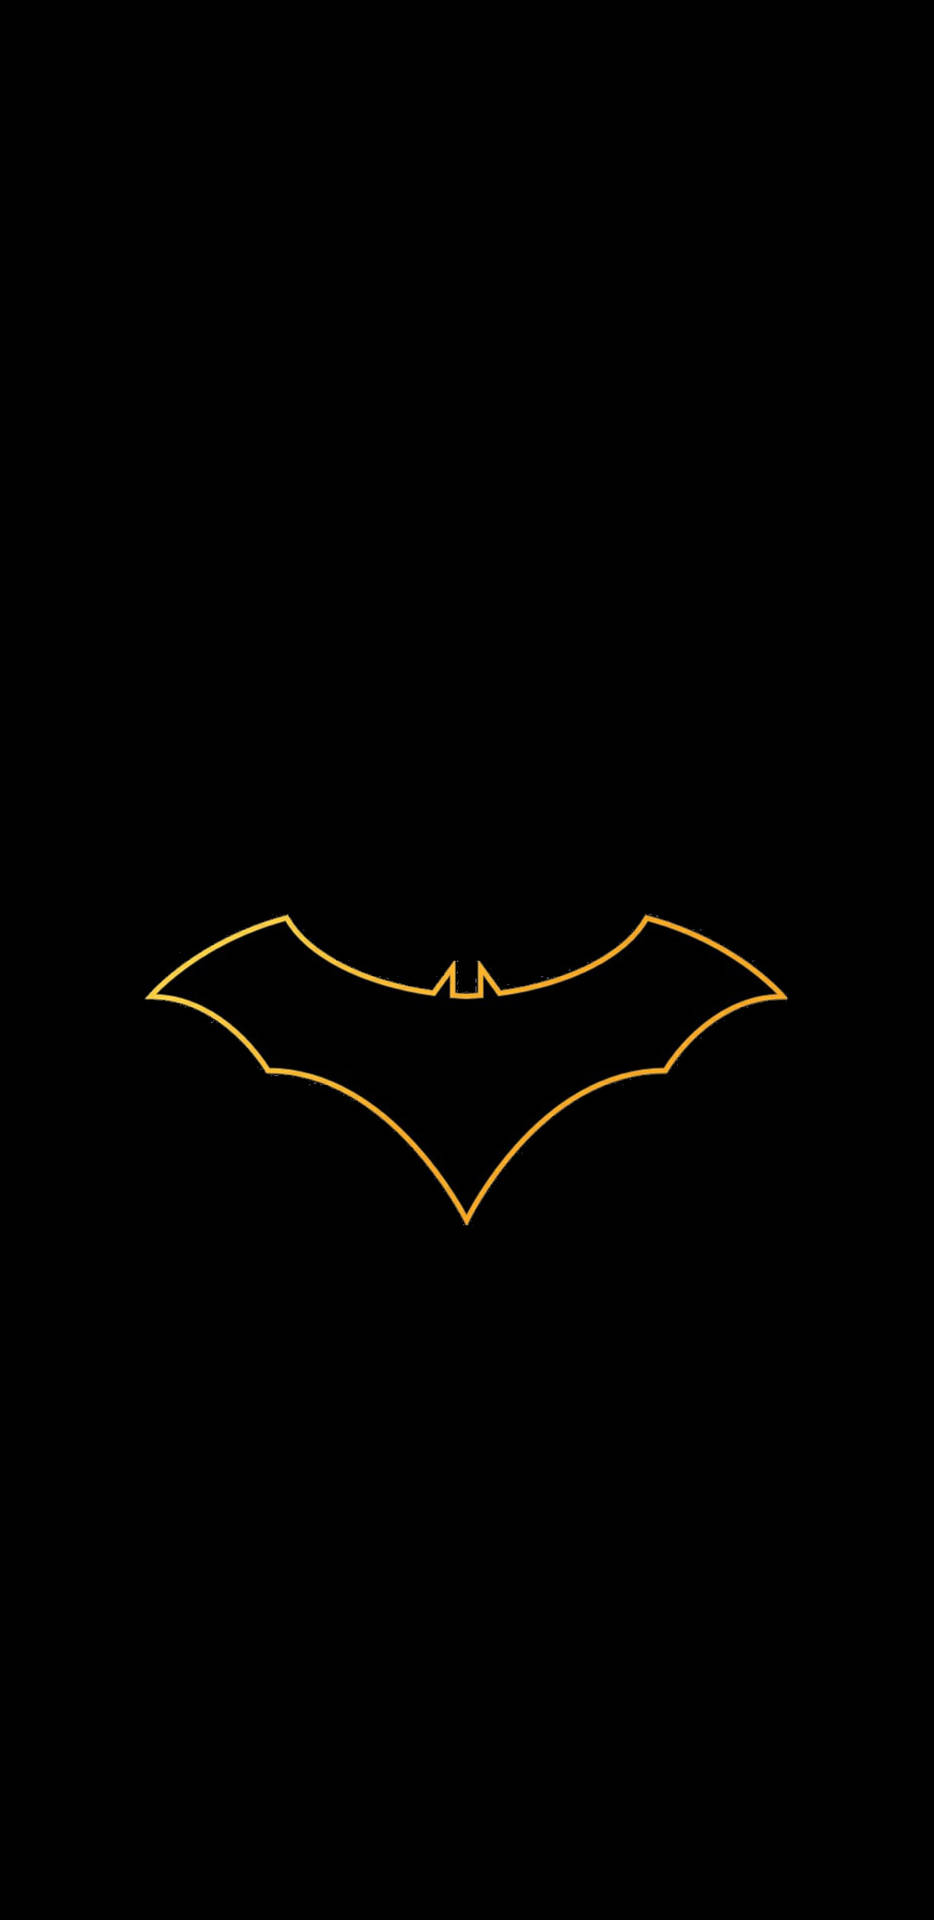 Download Pixel 3 Xl Batman Logo Wallpaper 